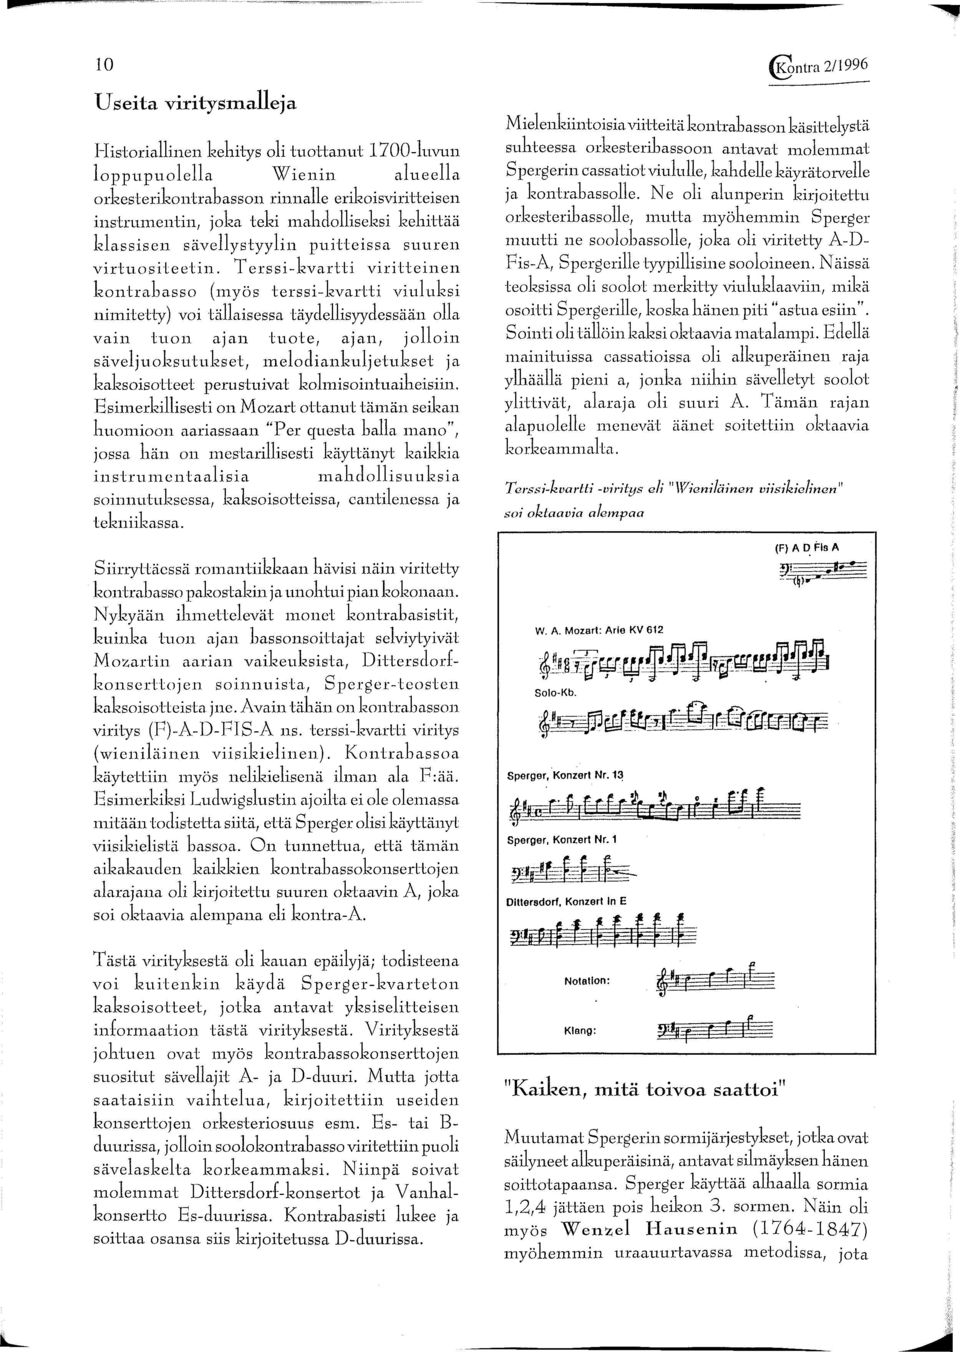 Terssi-kvartti viritteinen kontrabasso (myös terssi-kvartti viuluksi nimitetty) voi tällaisessa täydellisyydessään olla vain tuon ajan tuote, ajan, jolloin säveljuoksutukset, melodiankuljetukset ja